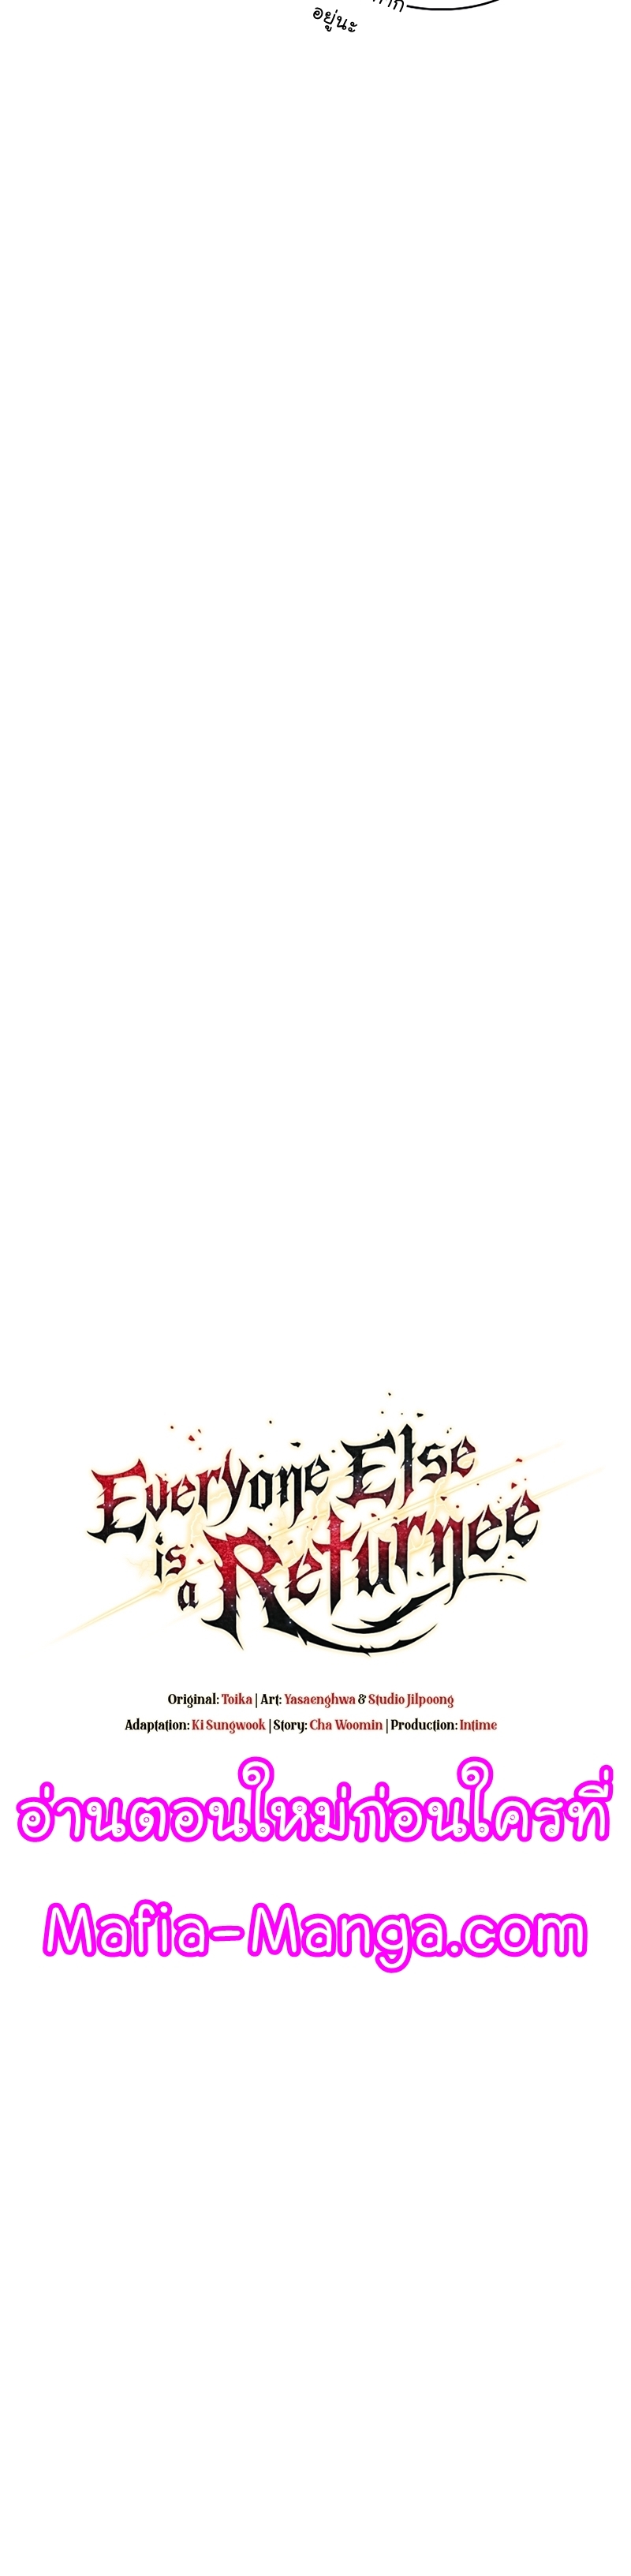 Everyone Else is A Returnee 34 11